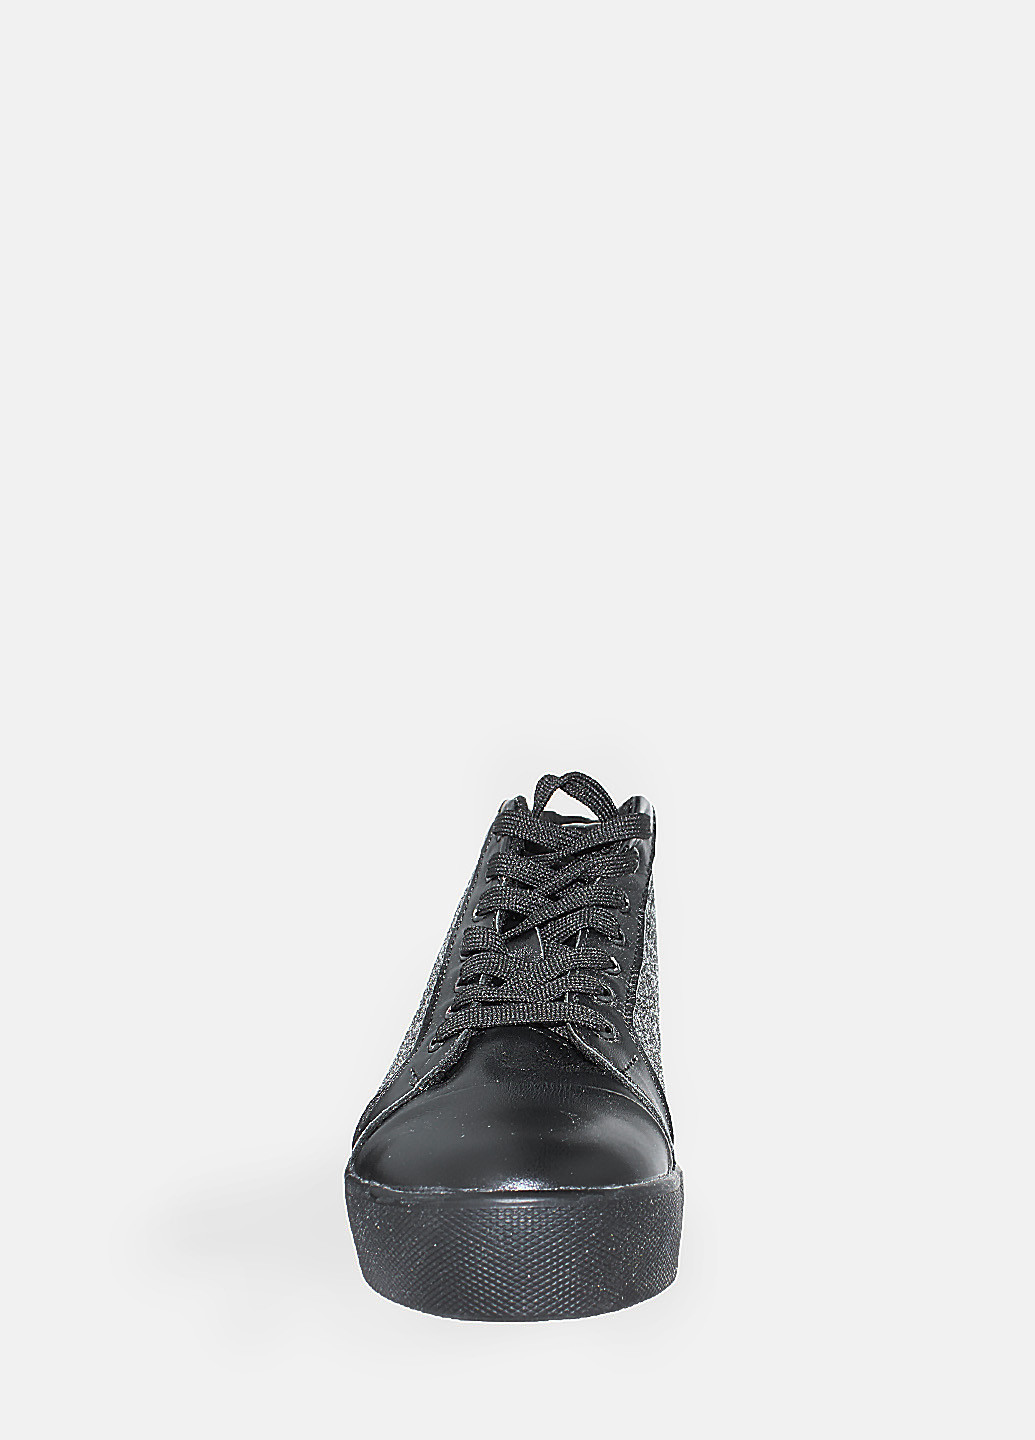 Осенние ботинки rdt132-1 черный-серый Daragani